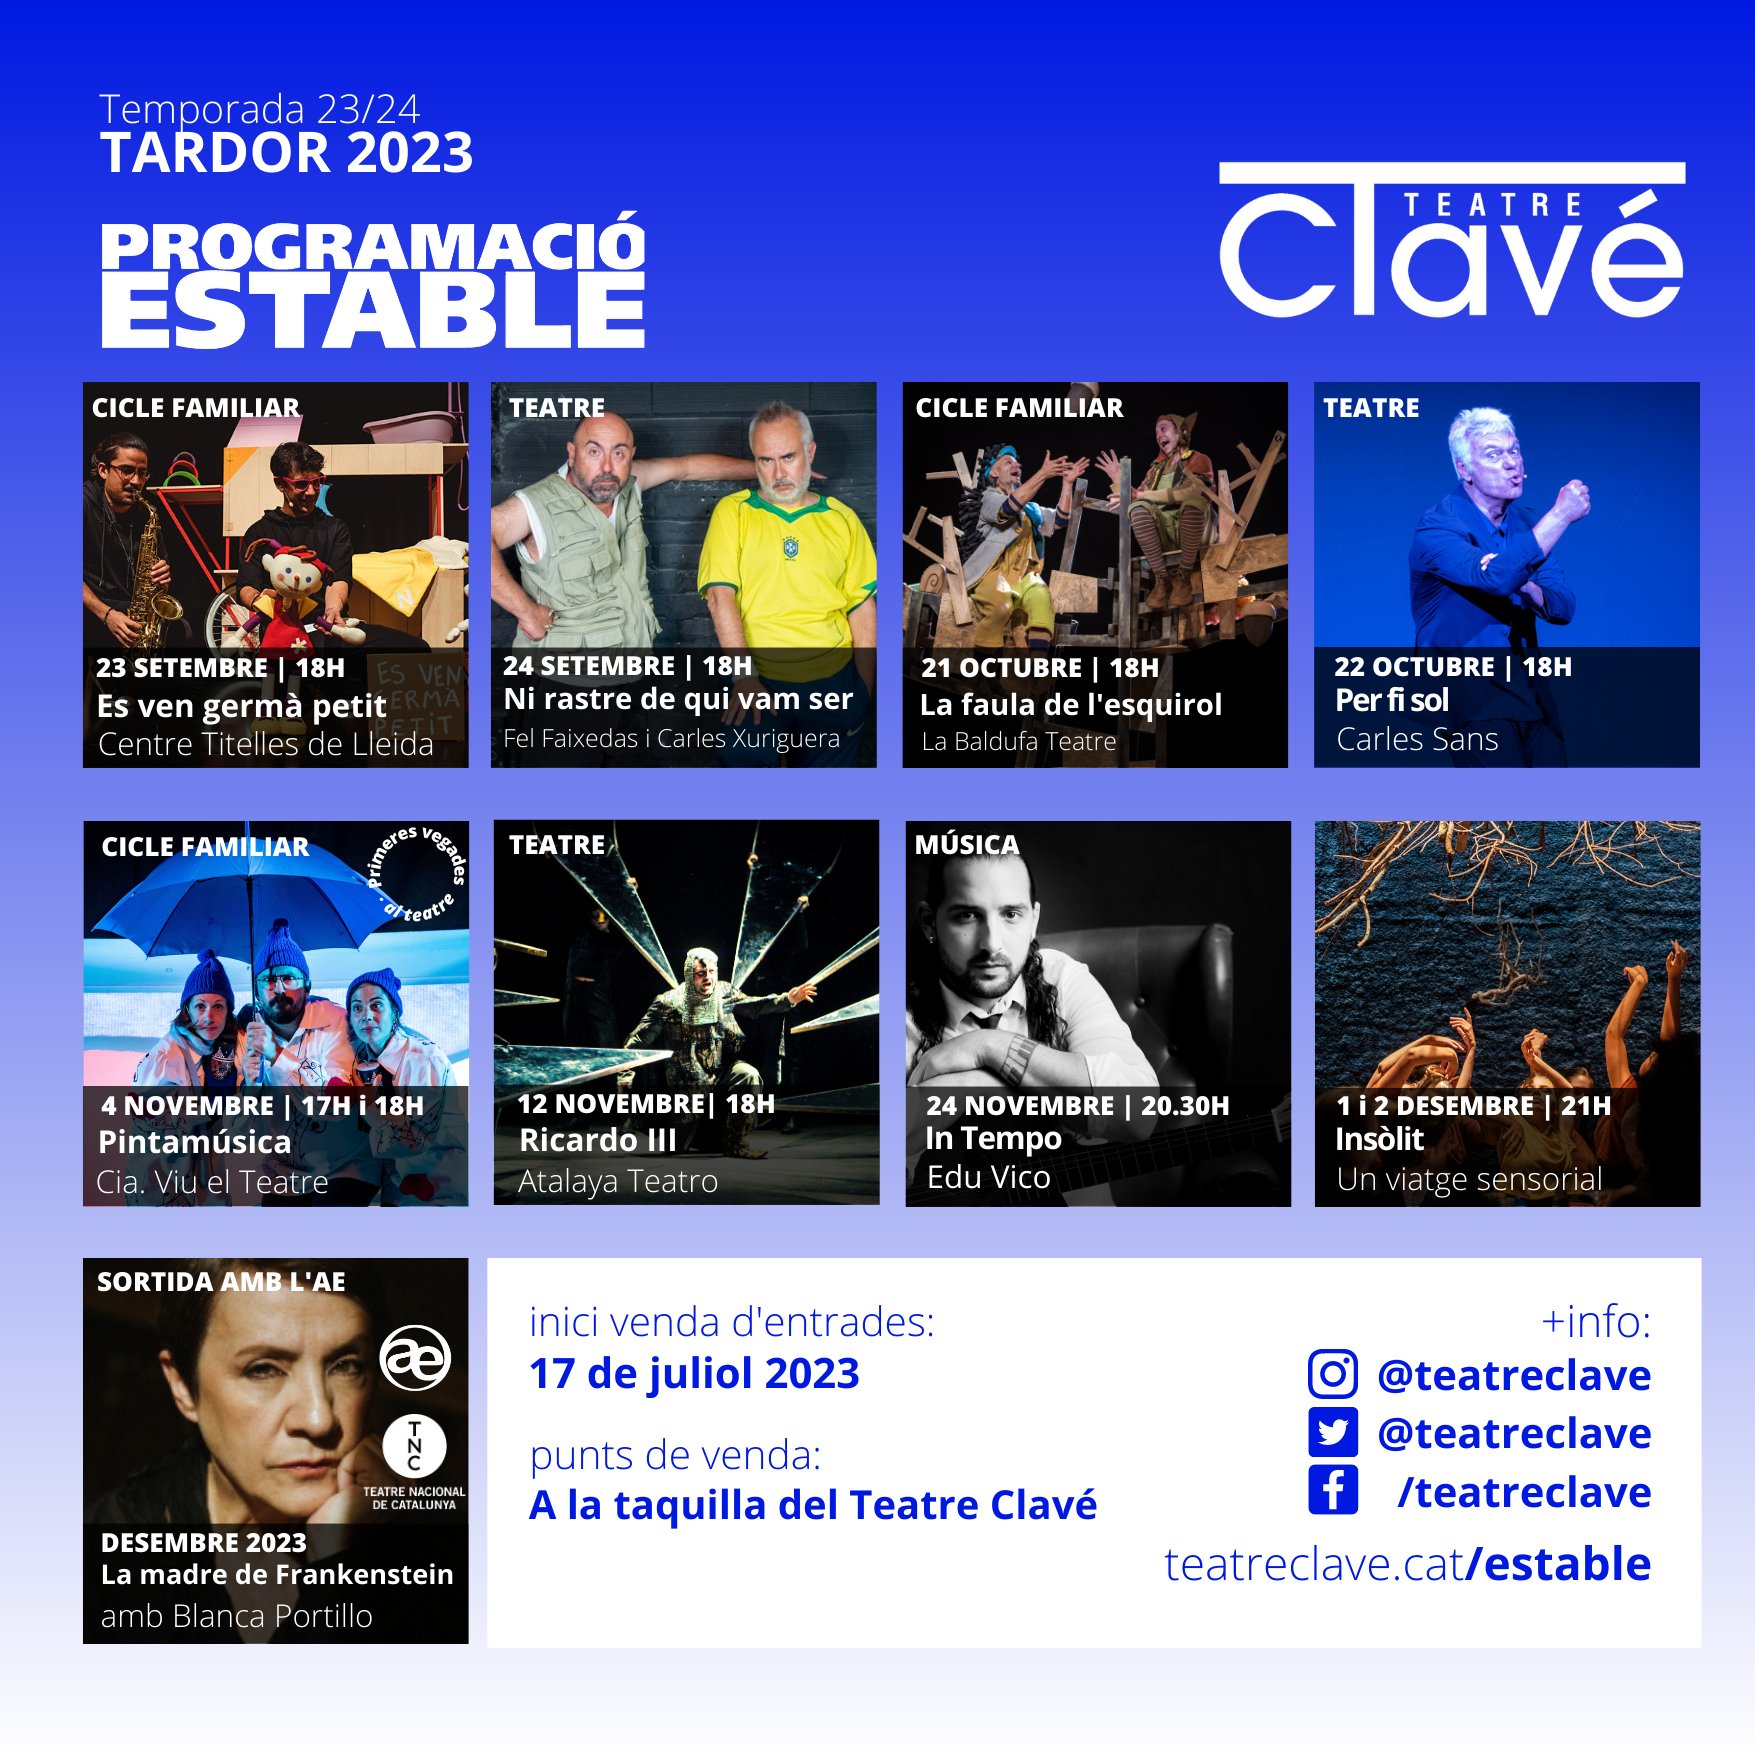 El Teatre Clavé de Tordera estrena nova programació